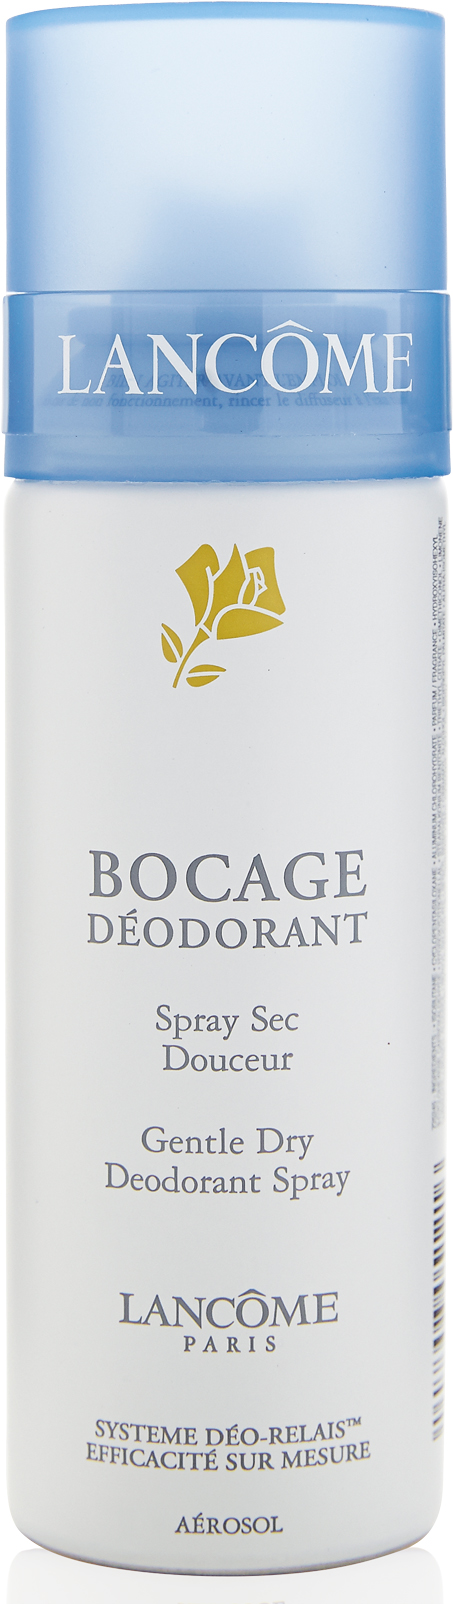 Lancome Bocage dezodorant pielęgnacyjny sprayu 125ml